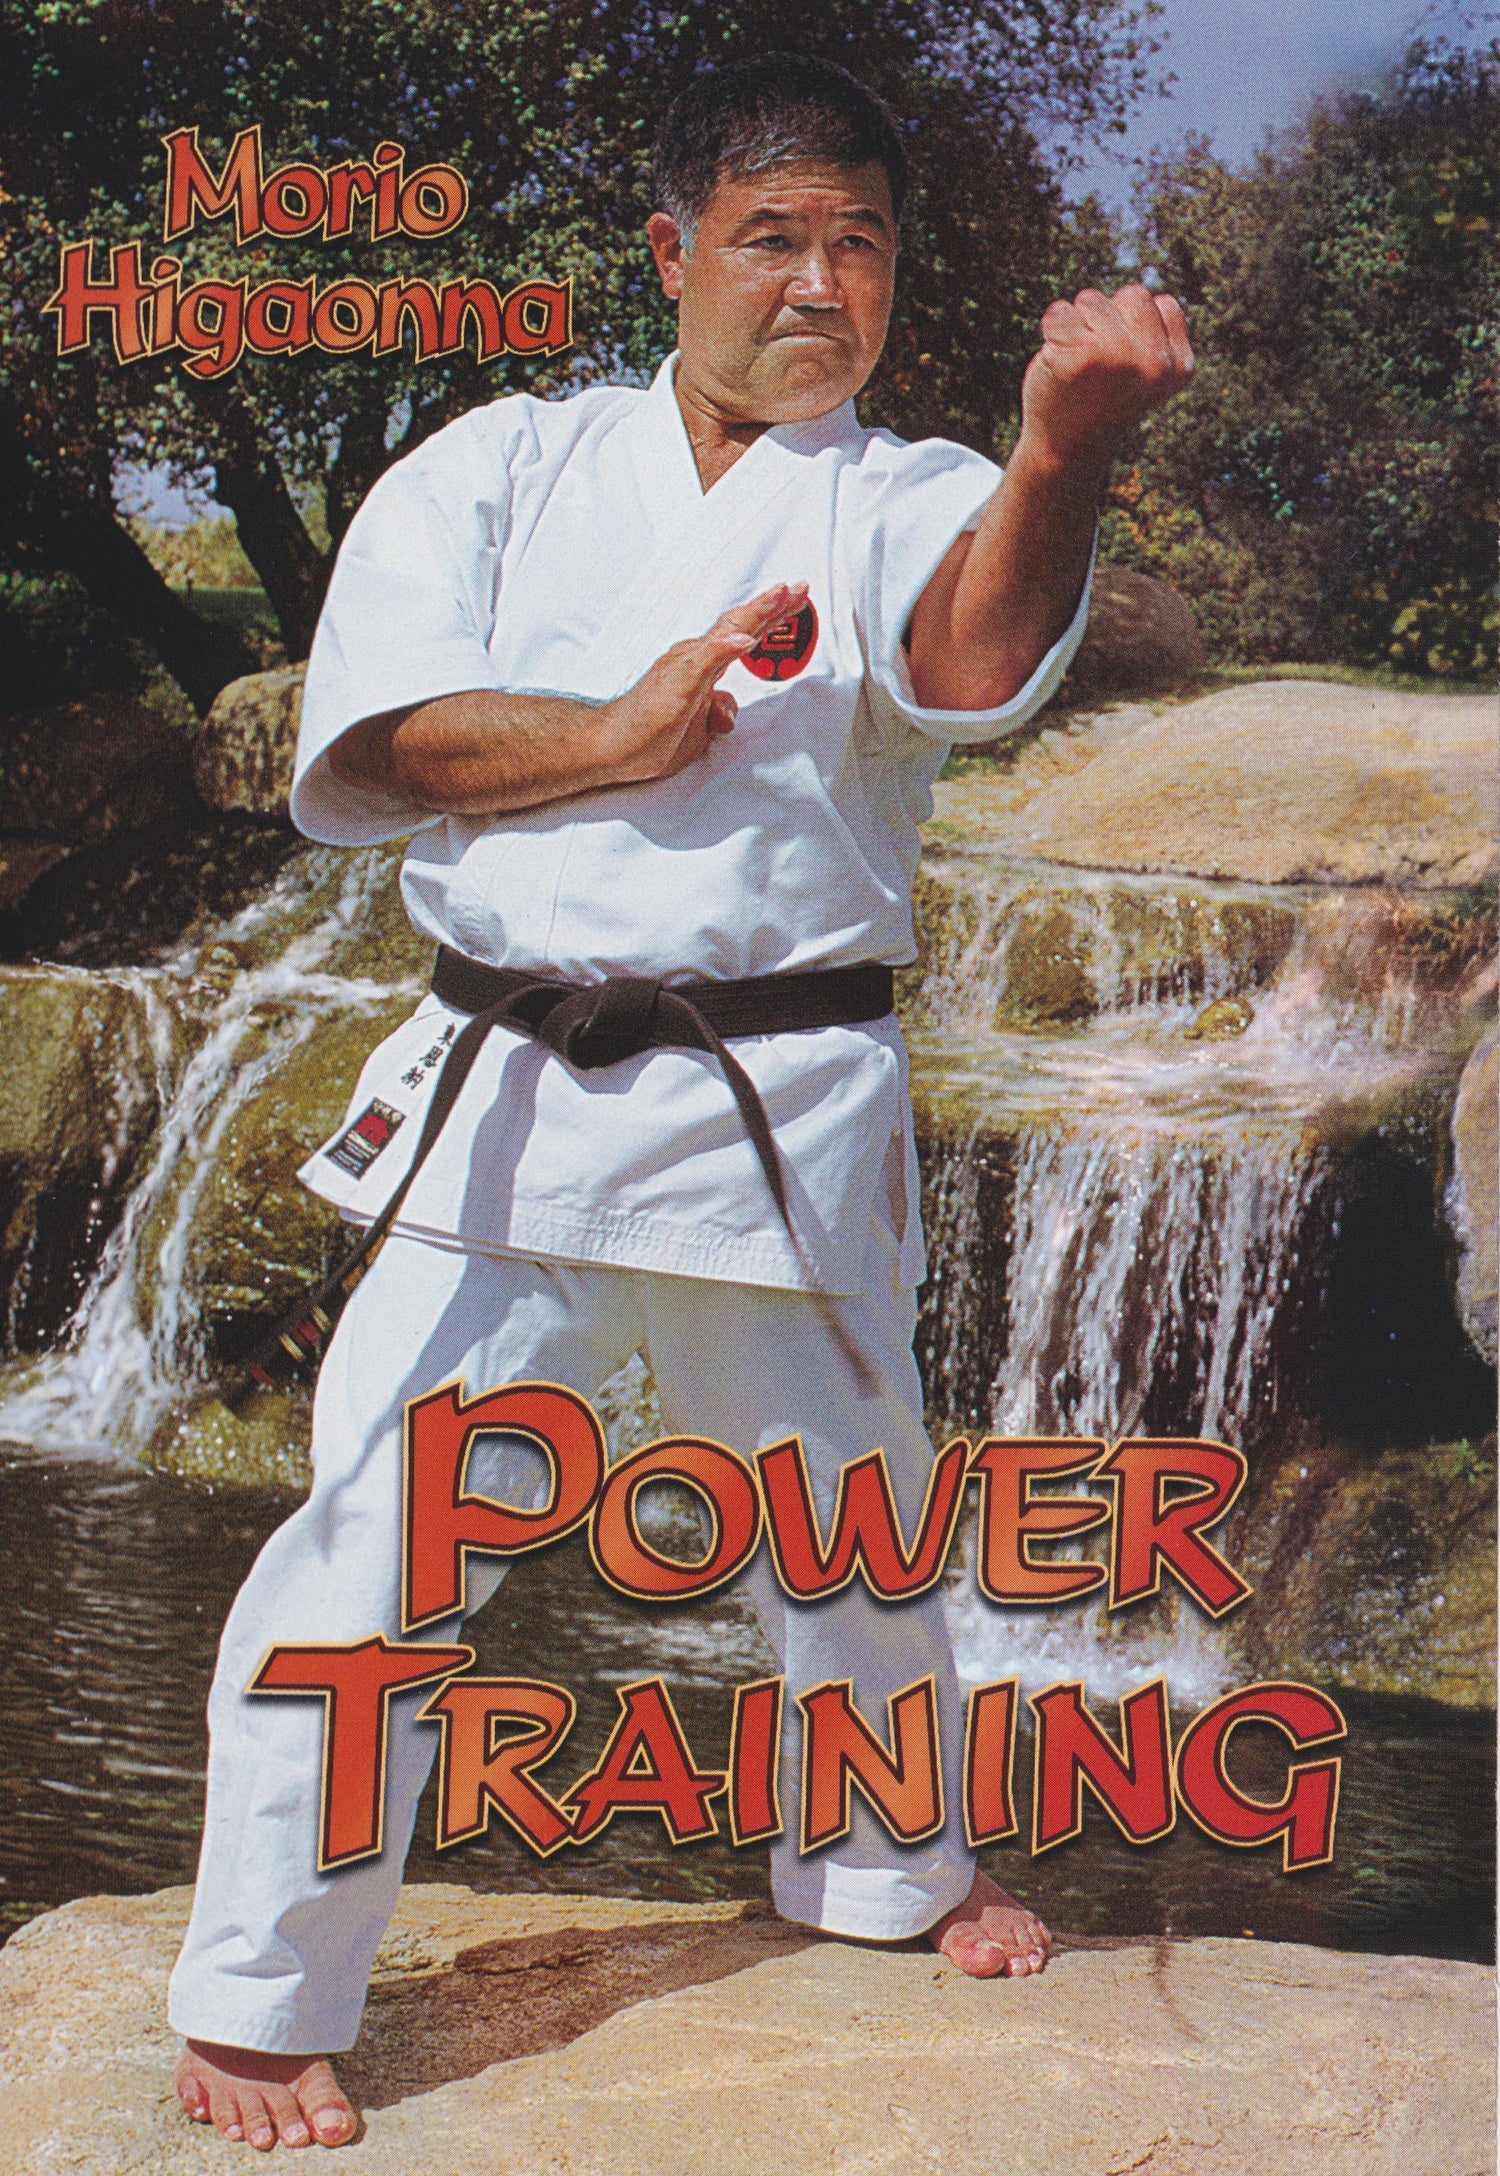 DVD de entrenamiento de potencia de Morio Higaonna